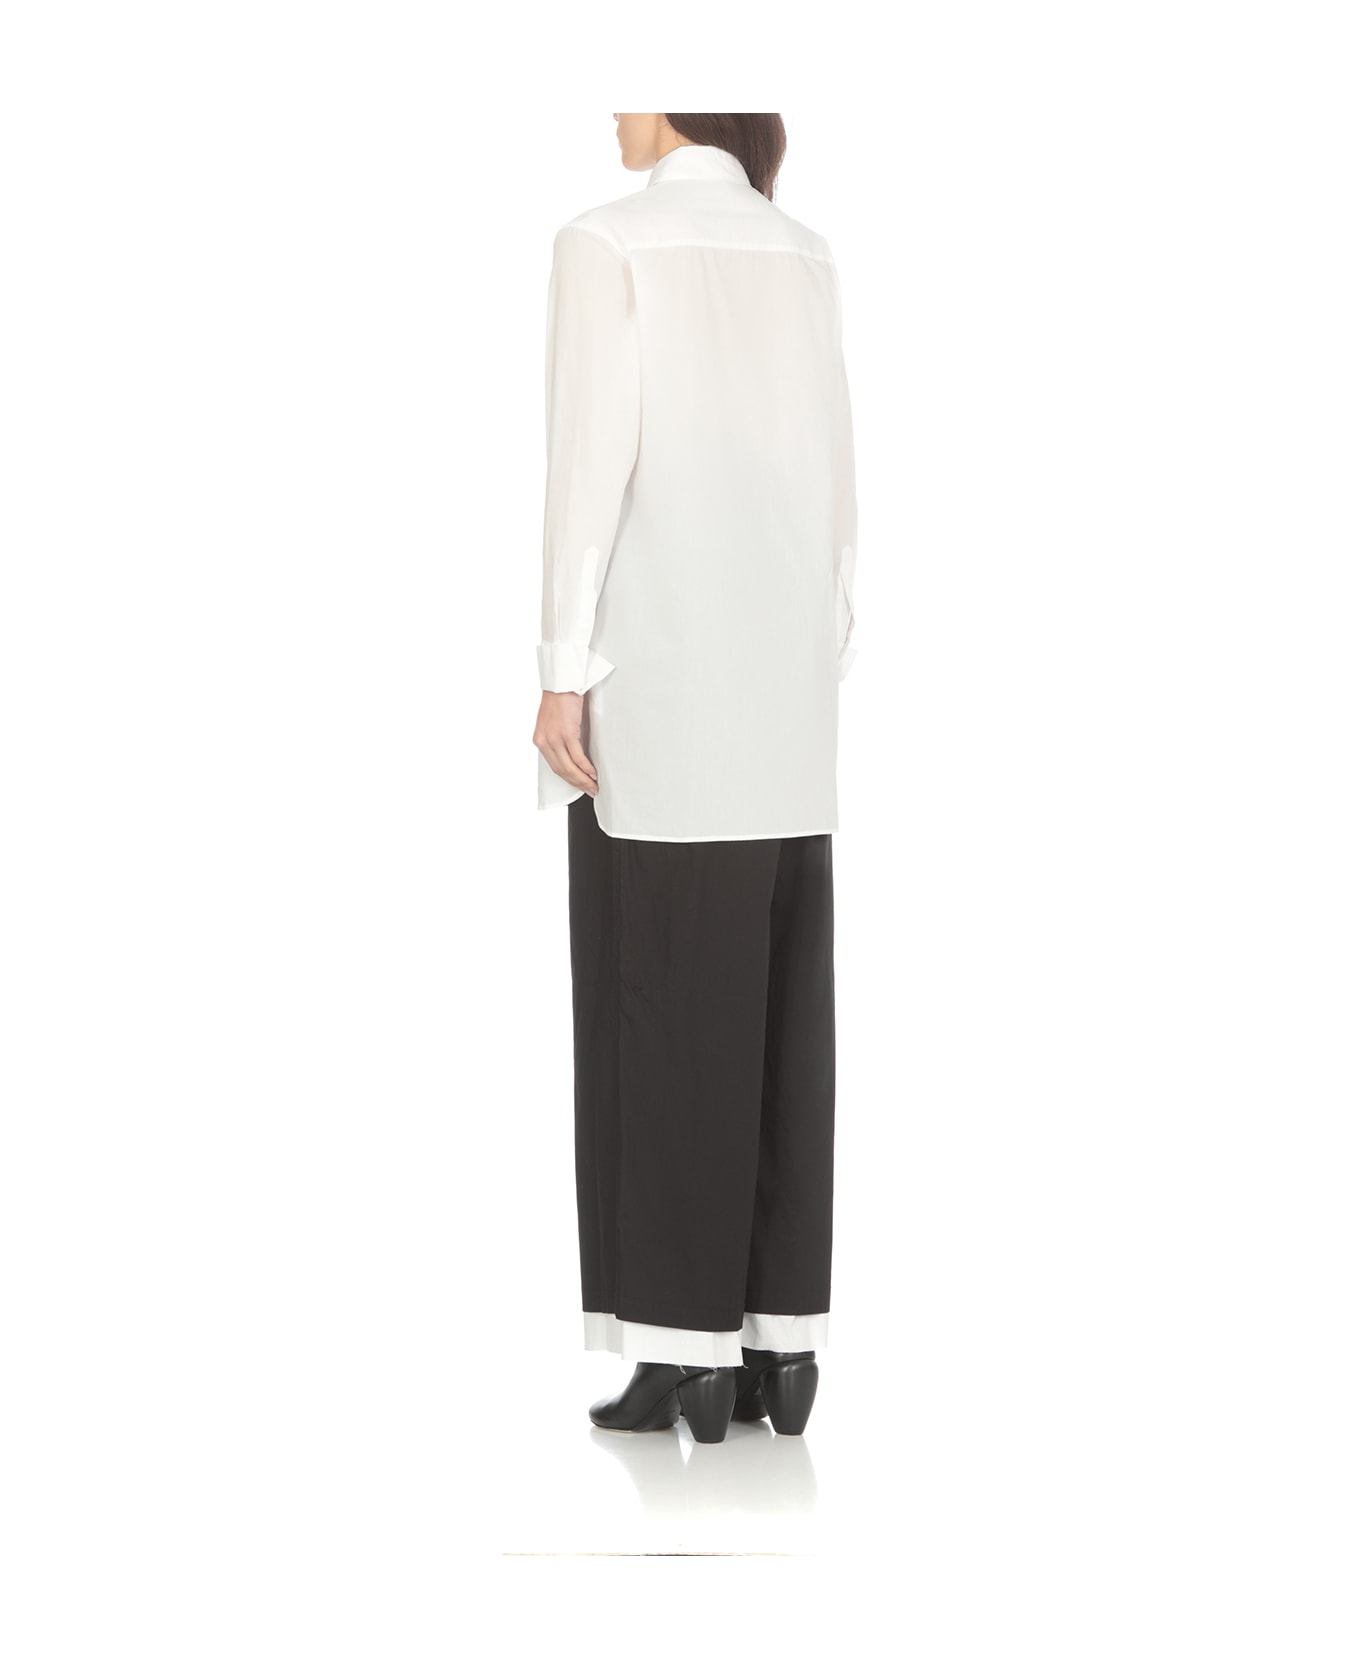 Yohji Yamamoto Cotton Shirt - White